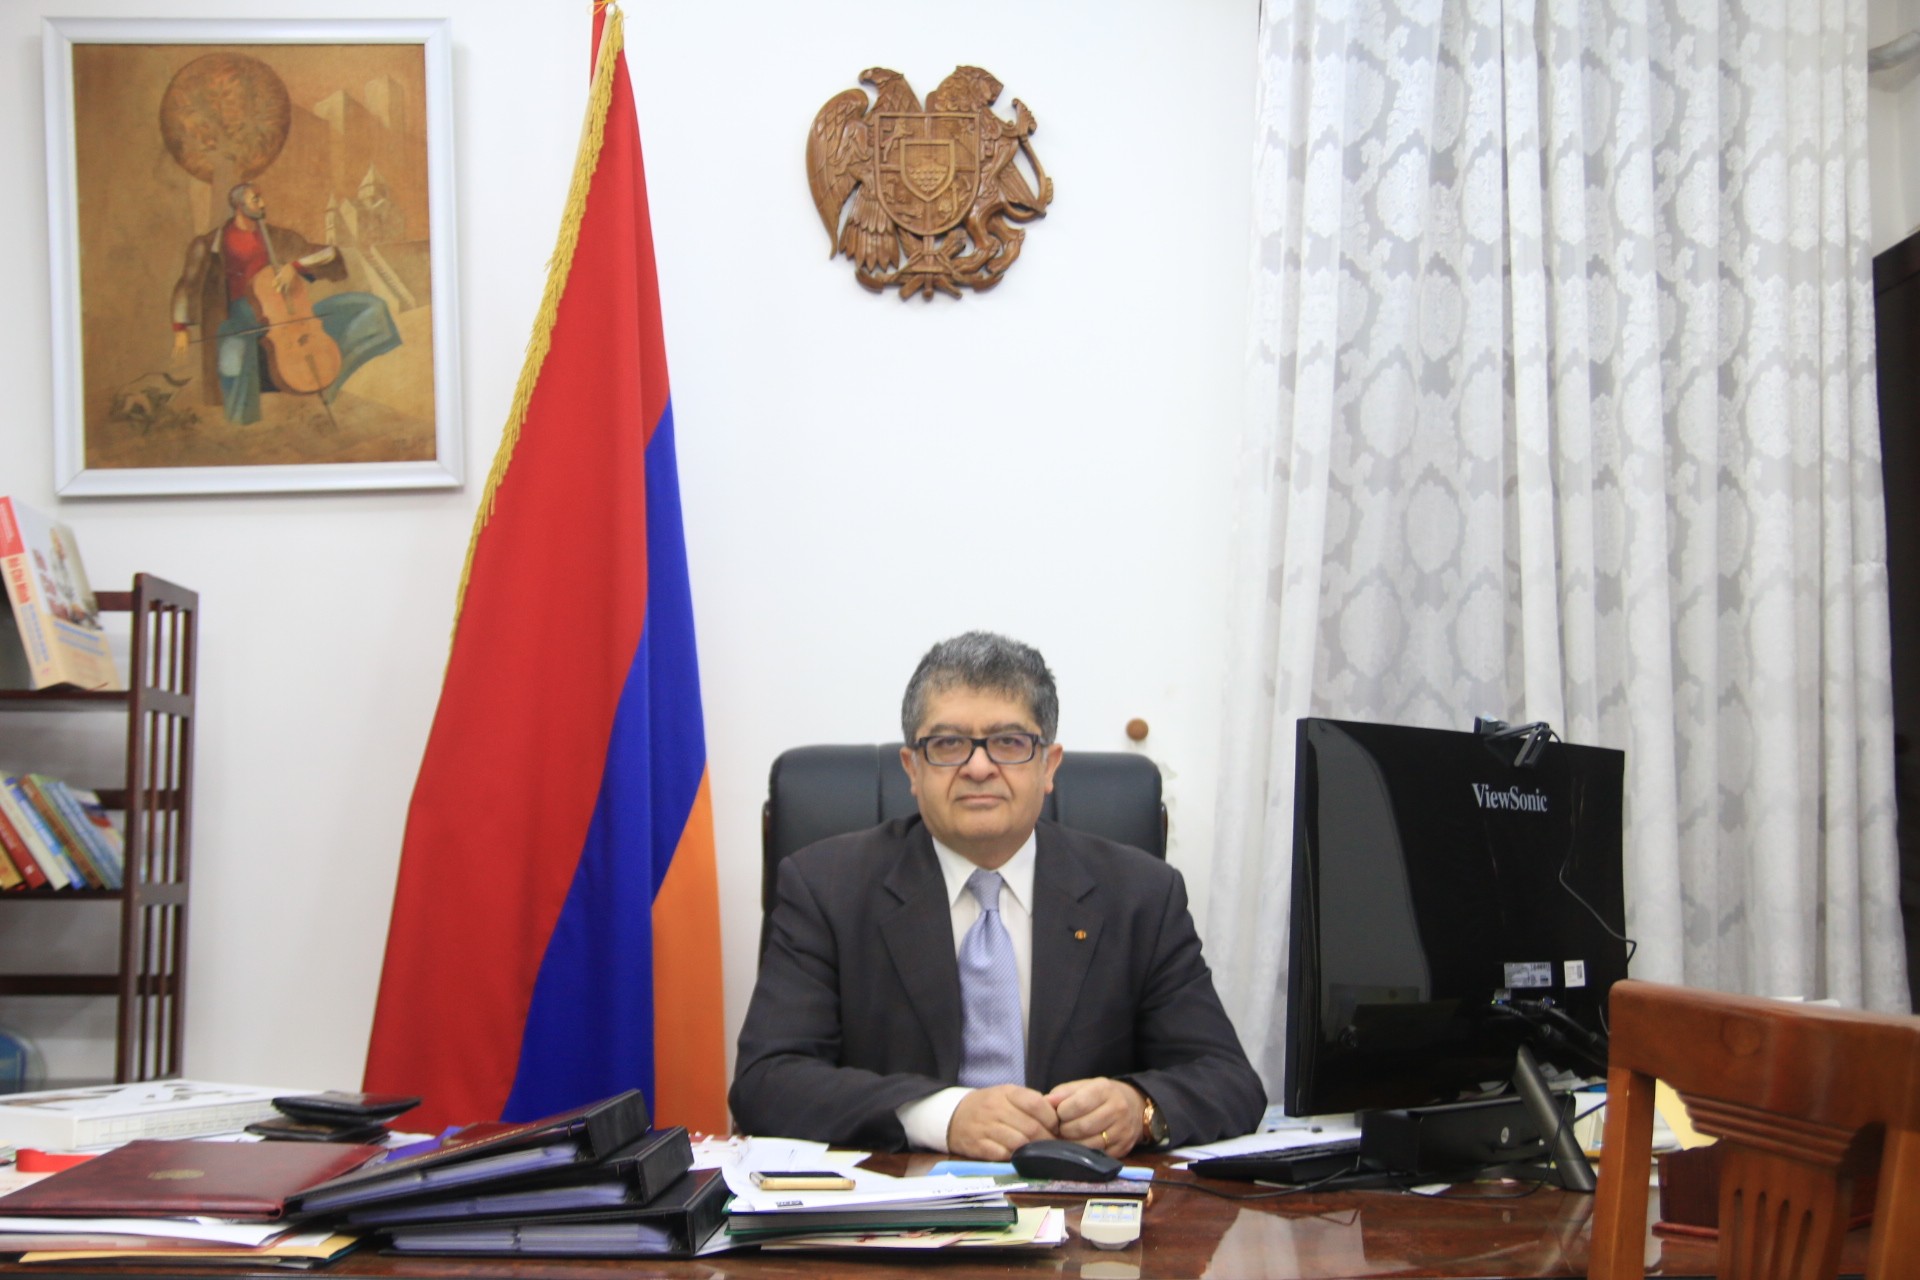 Đại sứ Armenia Vahram Kazhoyan: Rất nhiều tiềm năng hợp tác, giao lưu nhân dân hai nước chúng ta